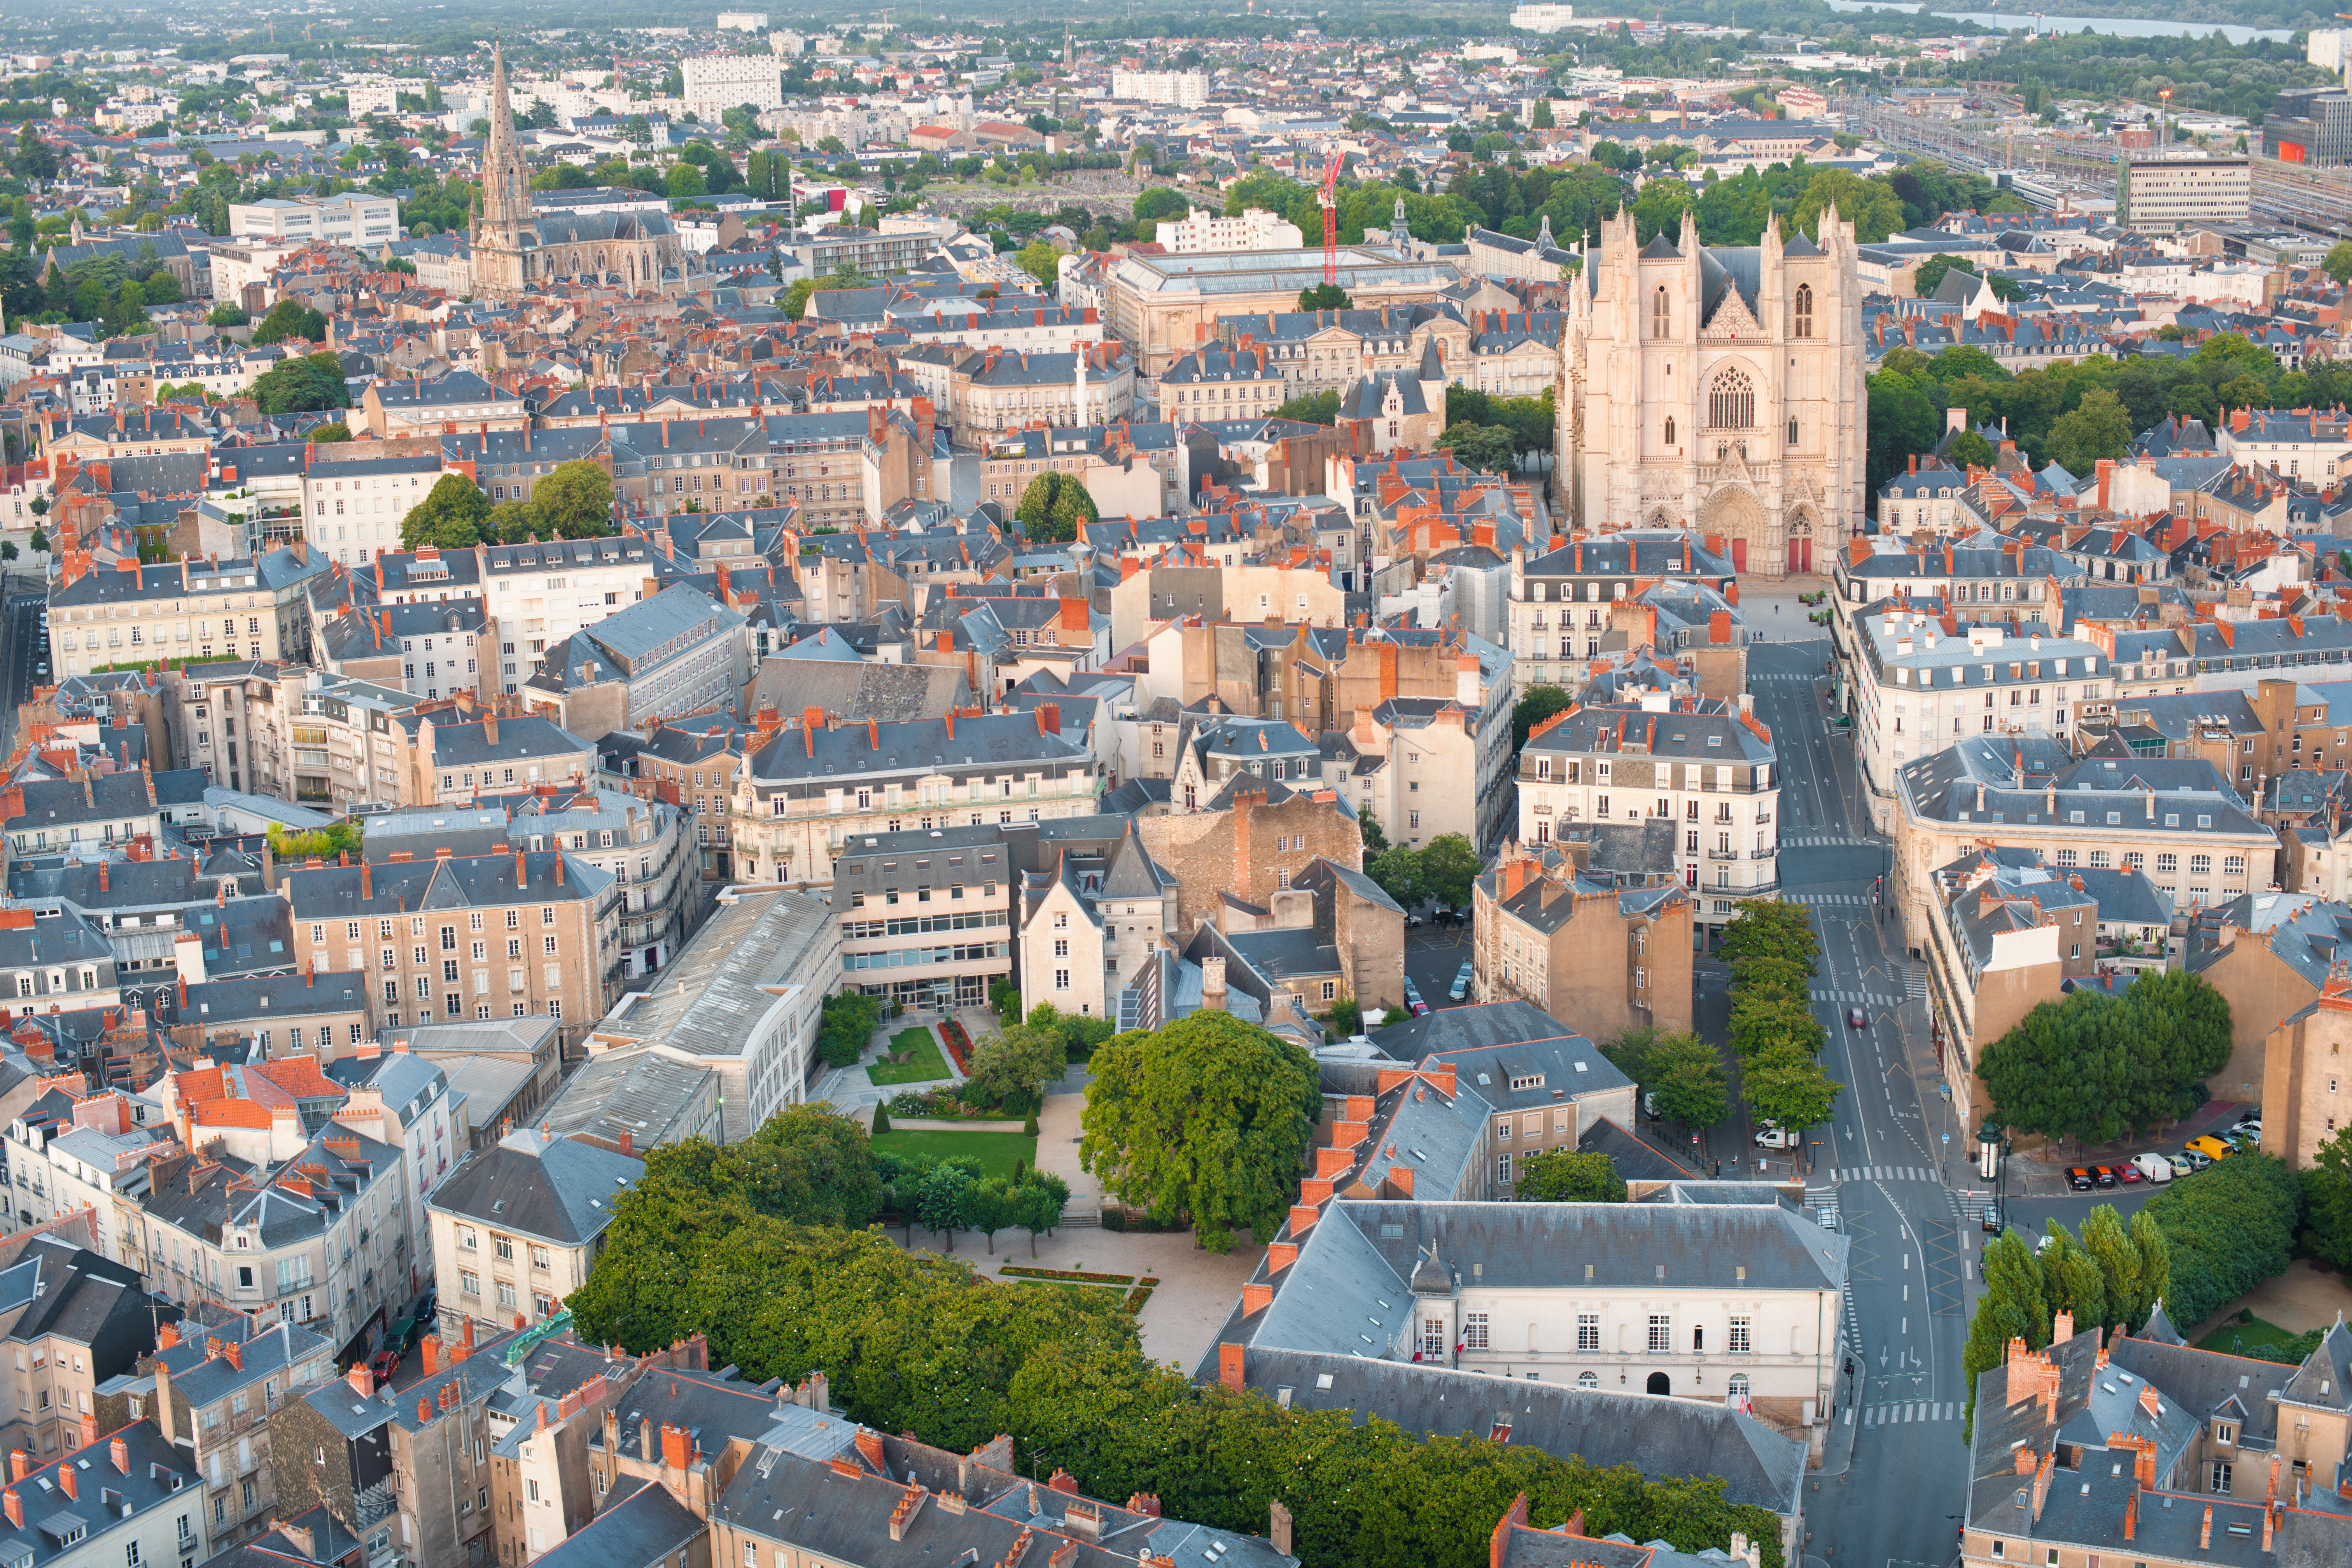 Comment choisir la bonne agence immobilière pour acheter une maison sur Nantes ?